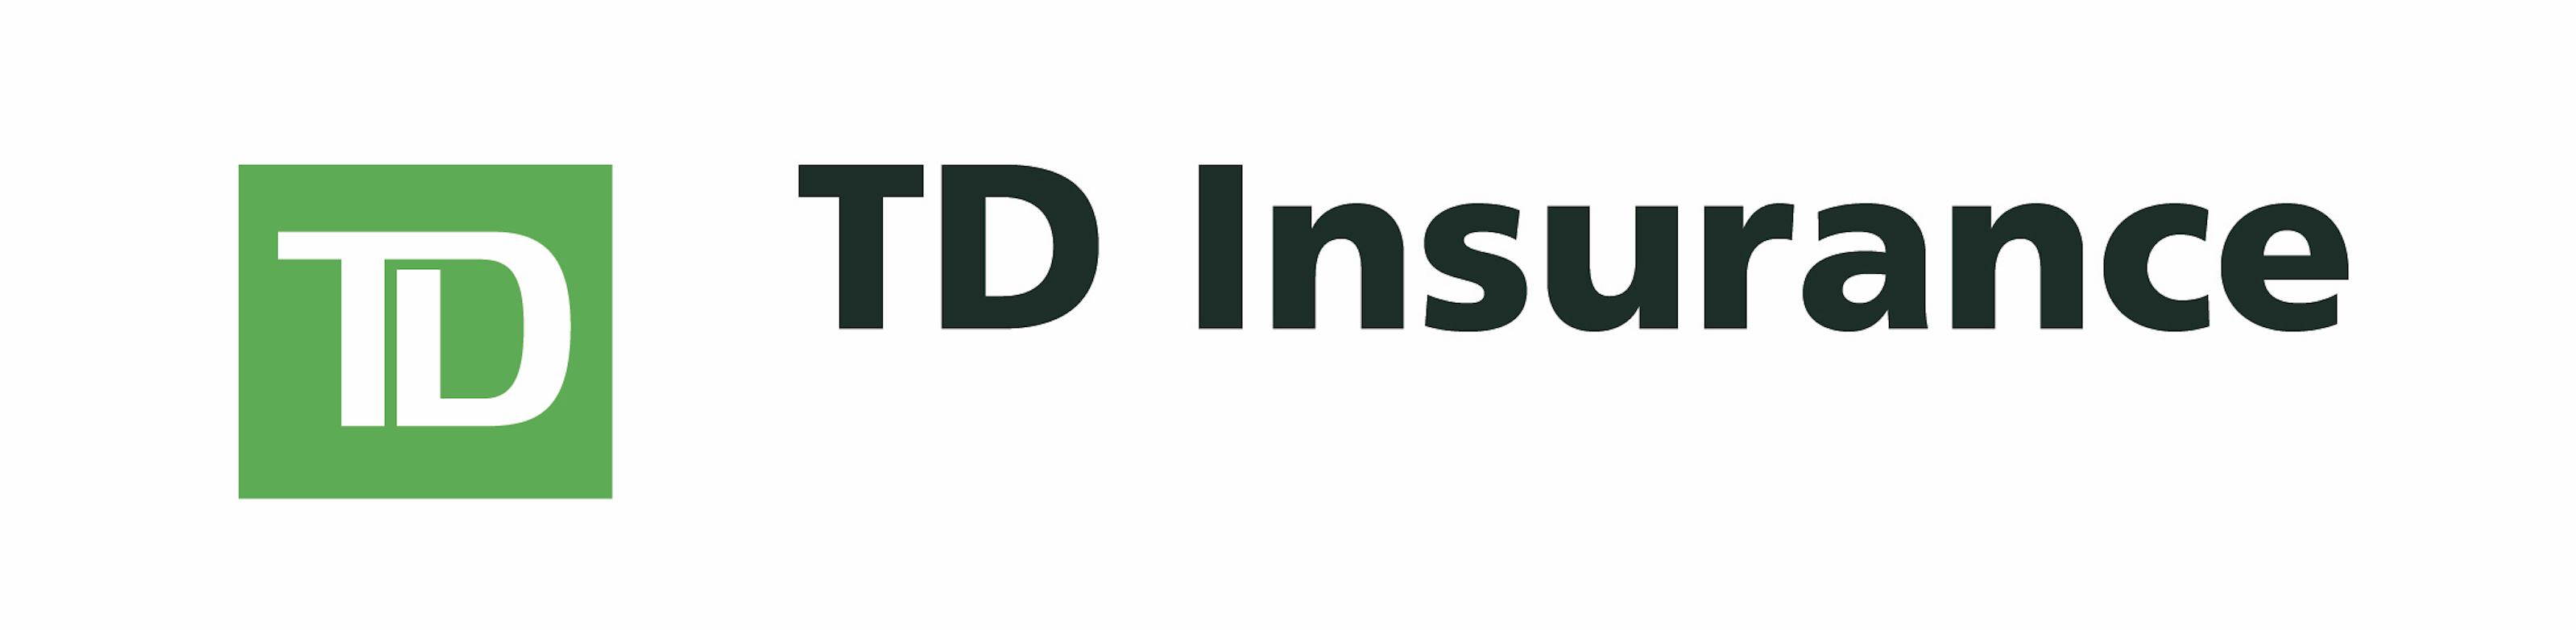 The TD Insurance logo